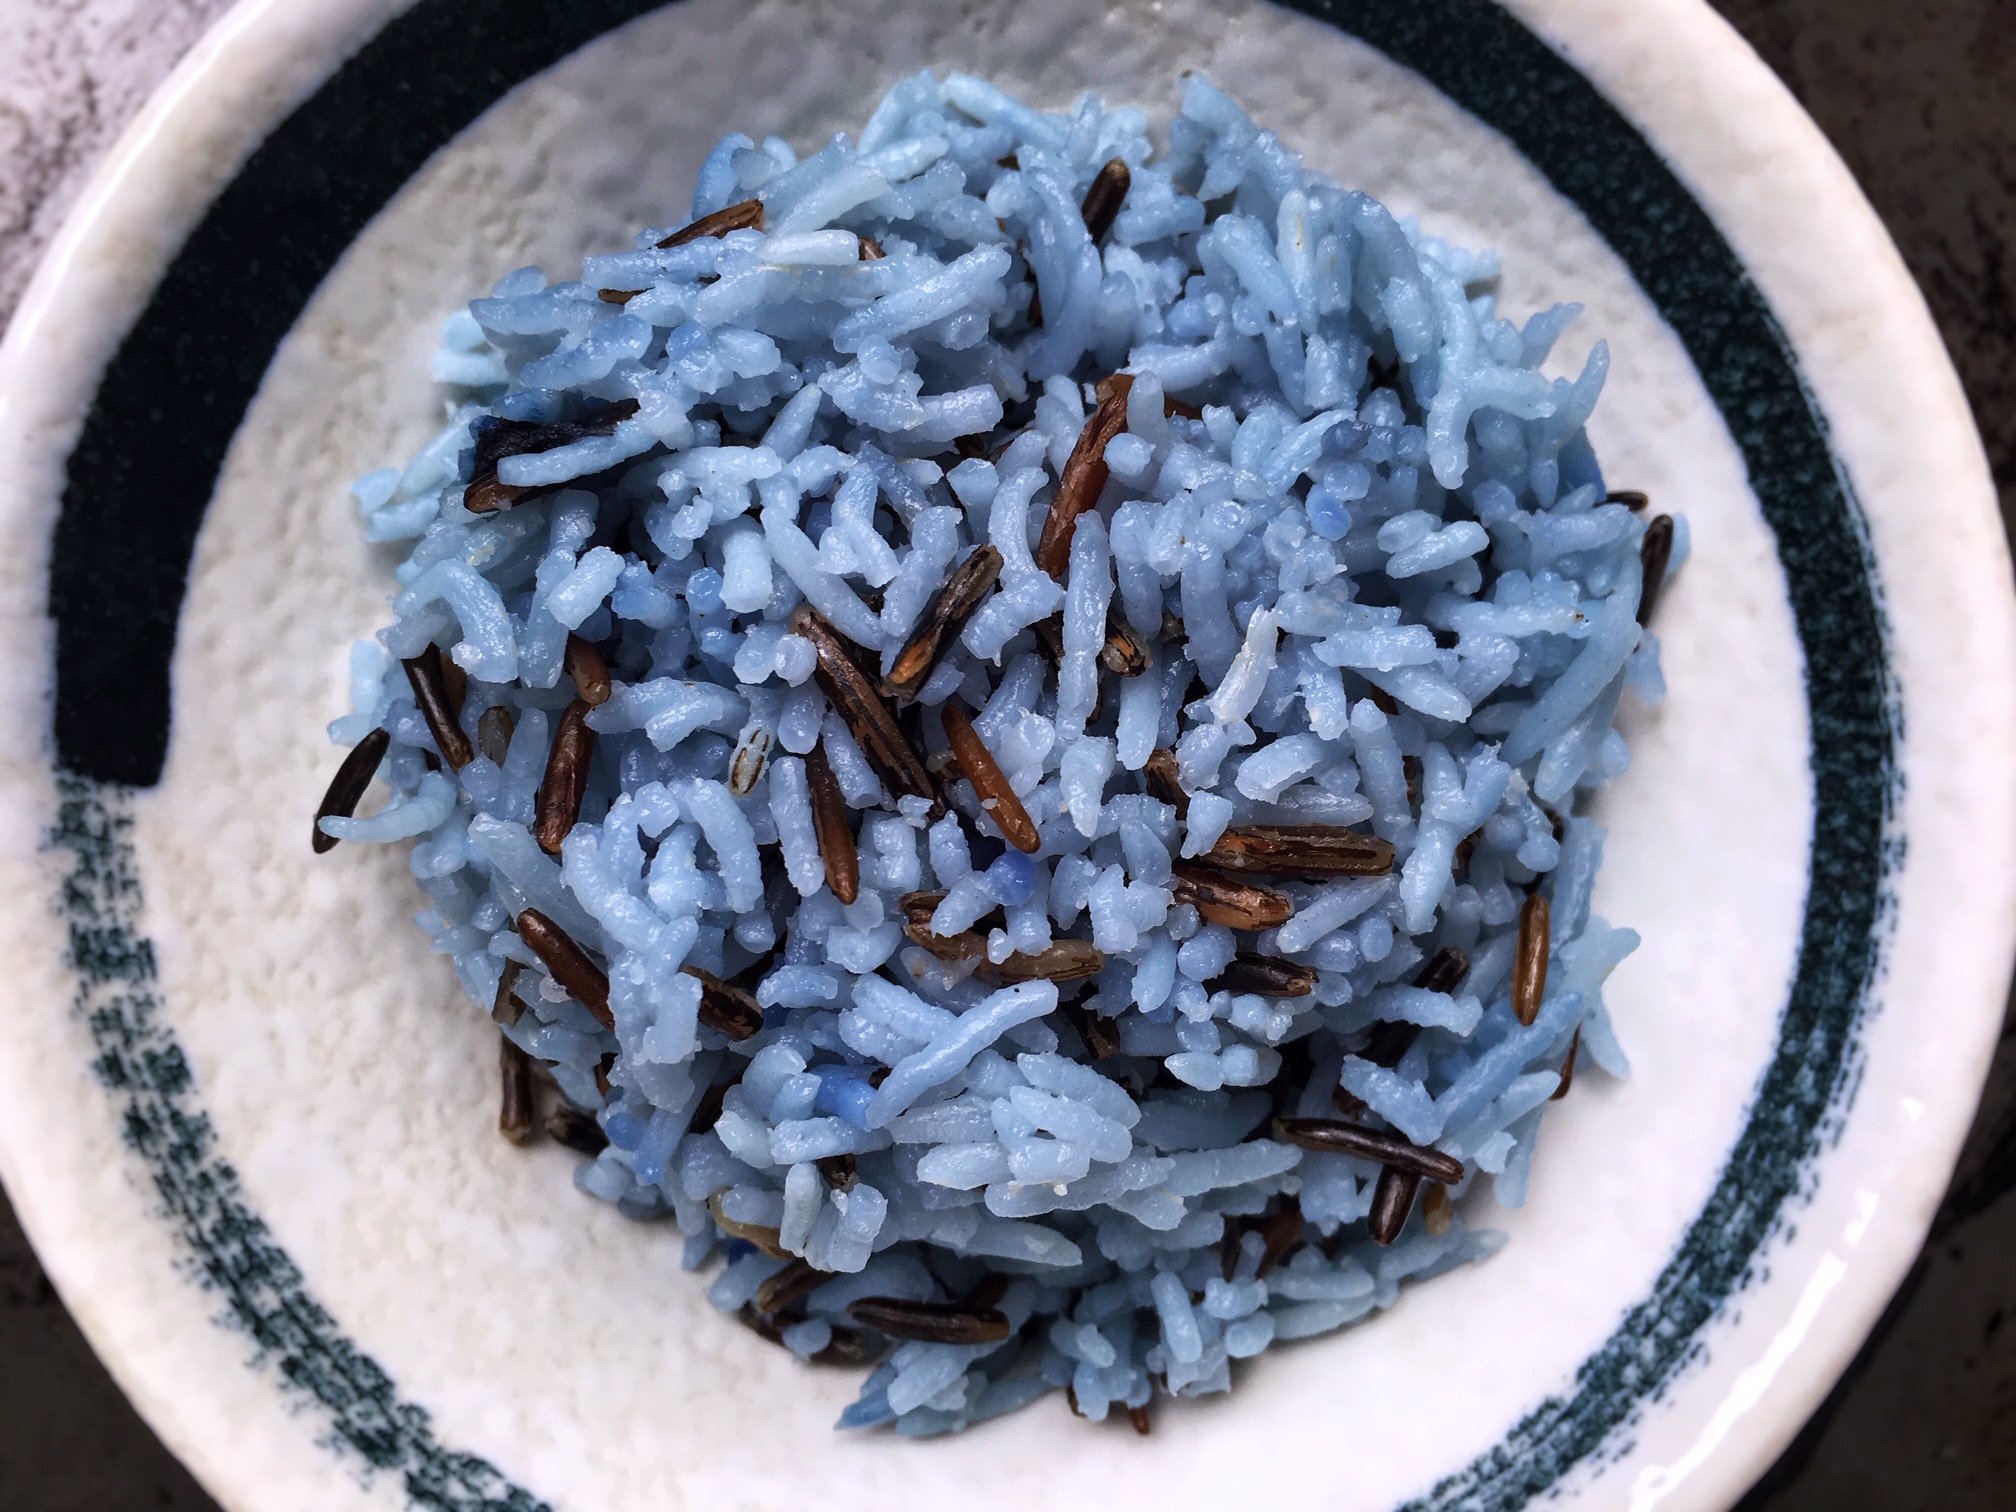 Blue rice